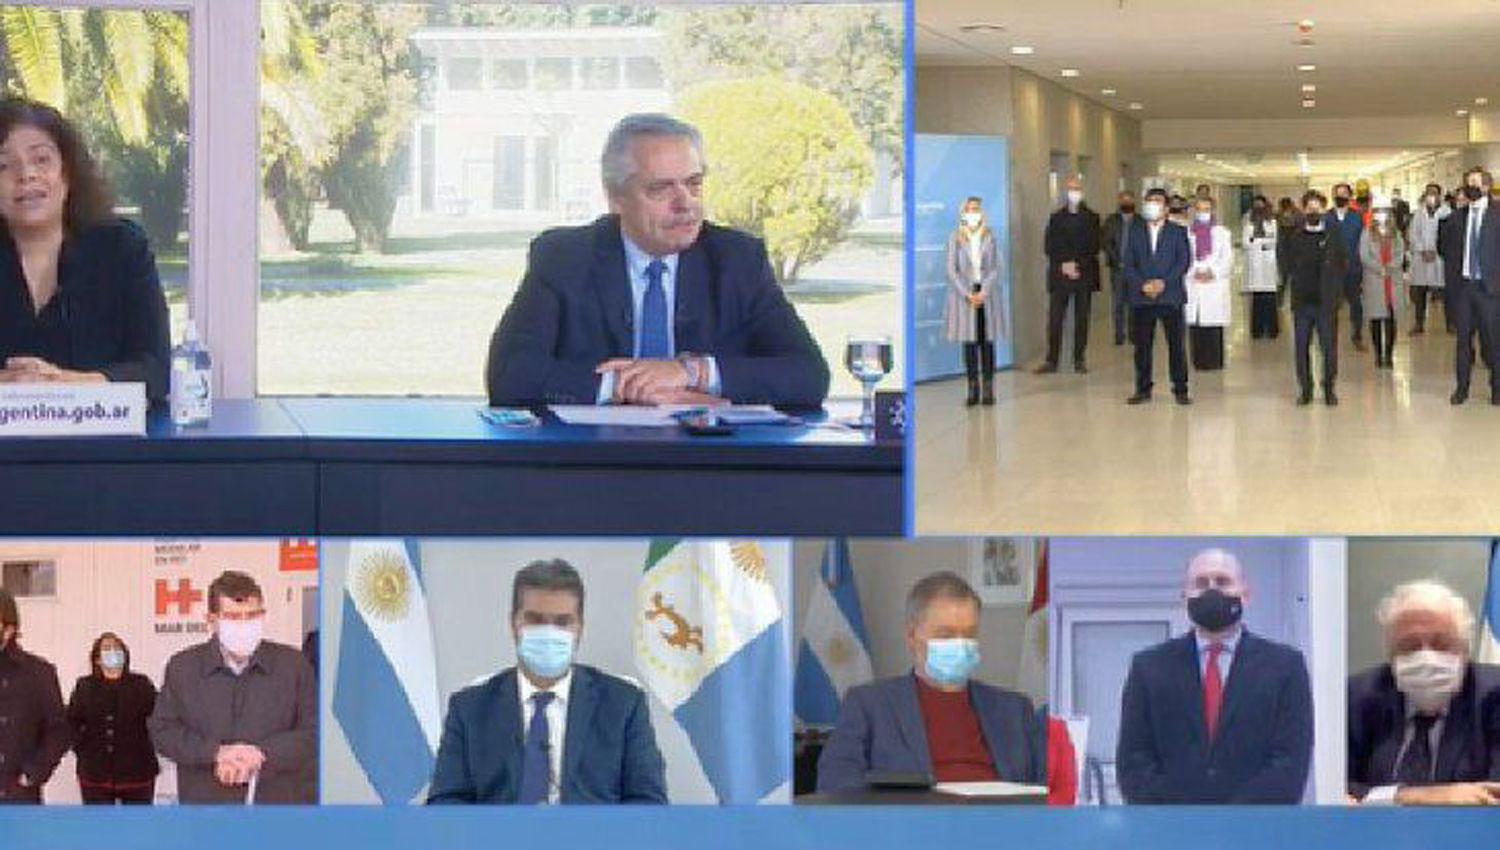 EN VIVO El presidente Alberto Fernaacutendez encabeza la apertura de un hospital de La Matanza